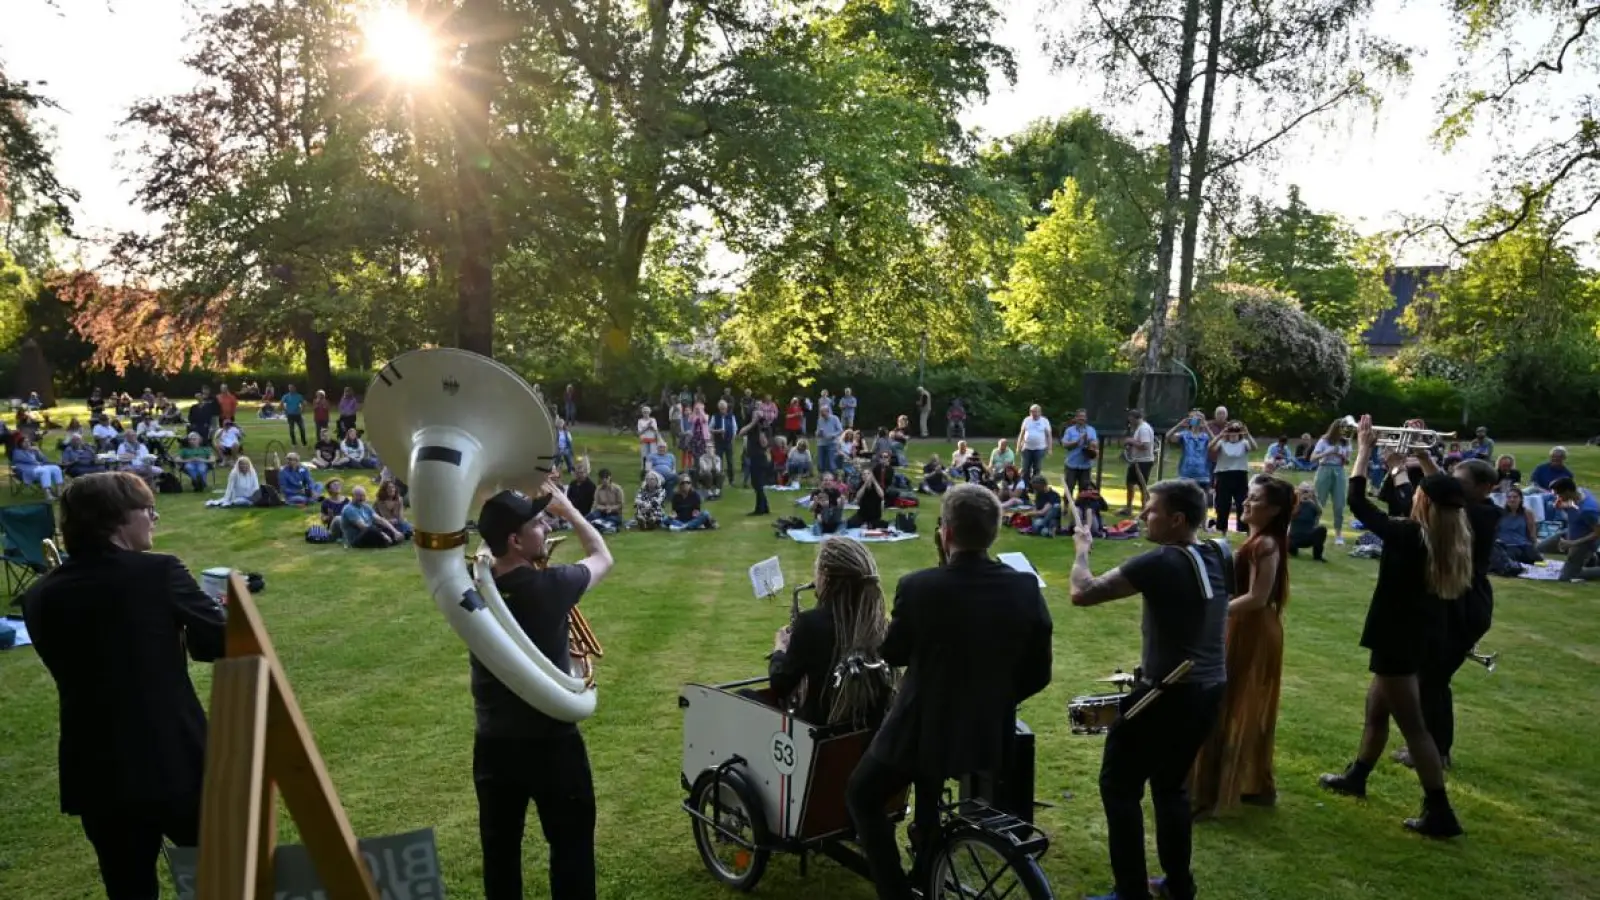  Das Picknick-Konzert soll, wie beim letzten Festival im Grünen stattfinden. <br> (Foto: Alexander Käberich)